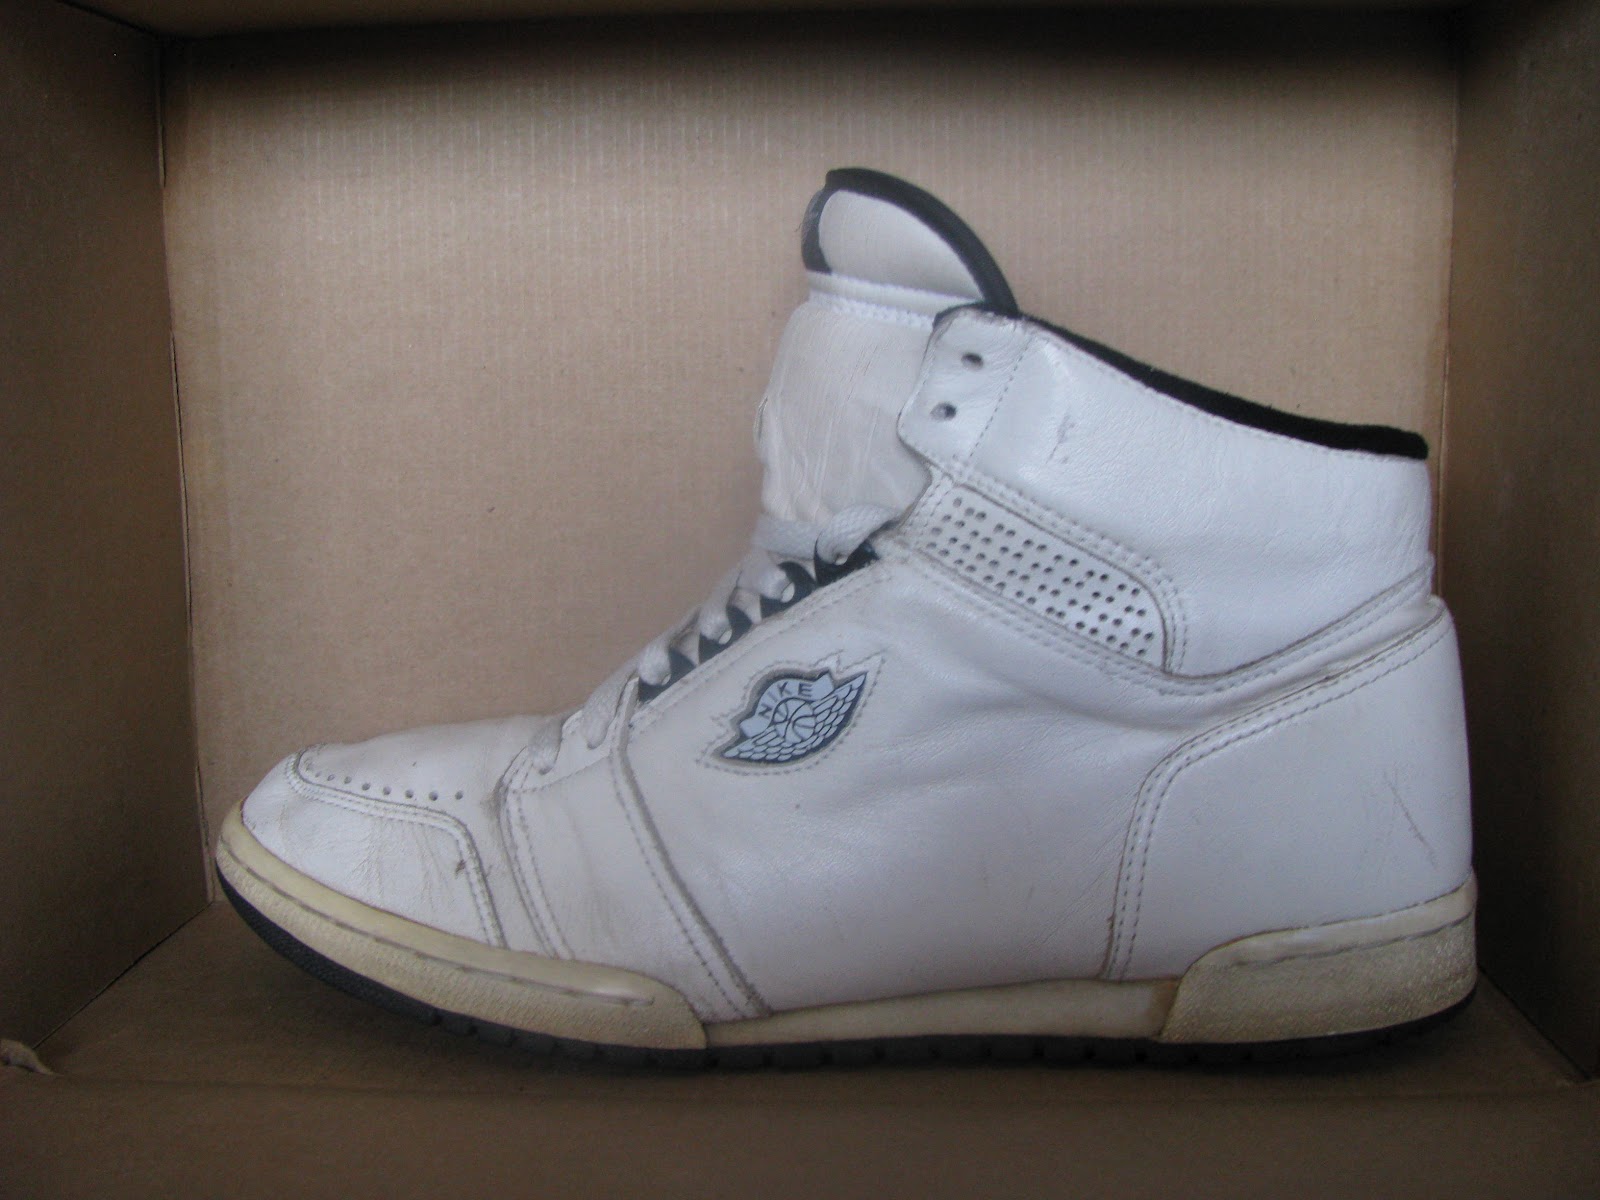 HOCKAKAY: Vintage Nike Air Jordan Prototype 1984-85-86